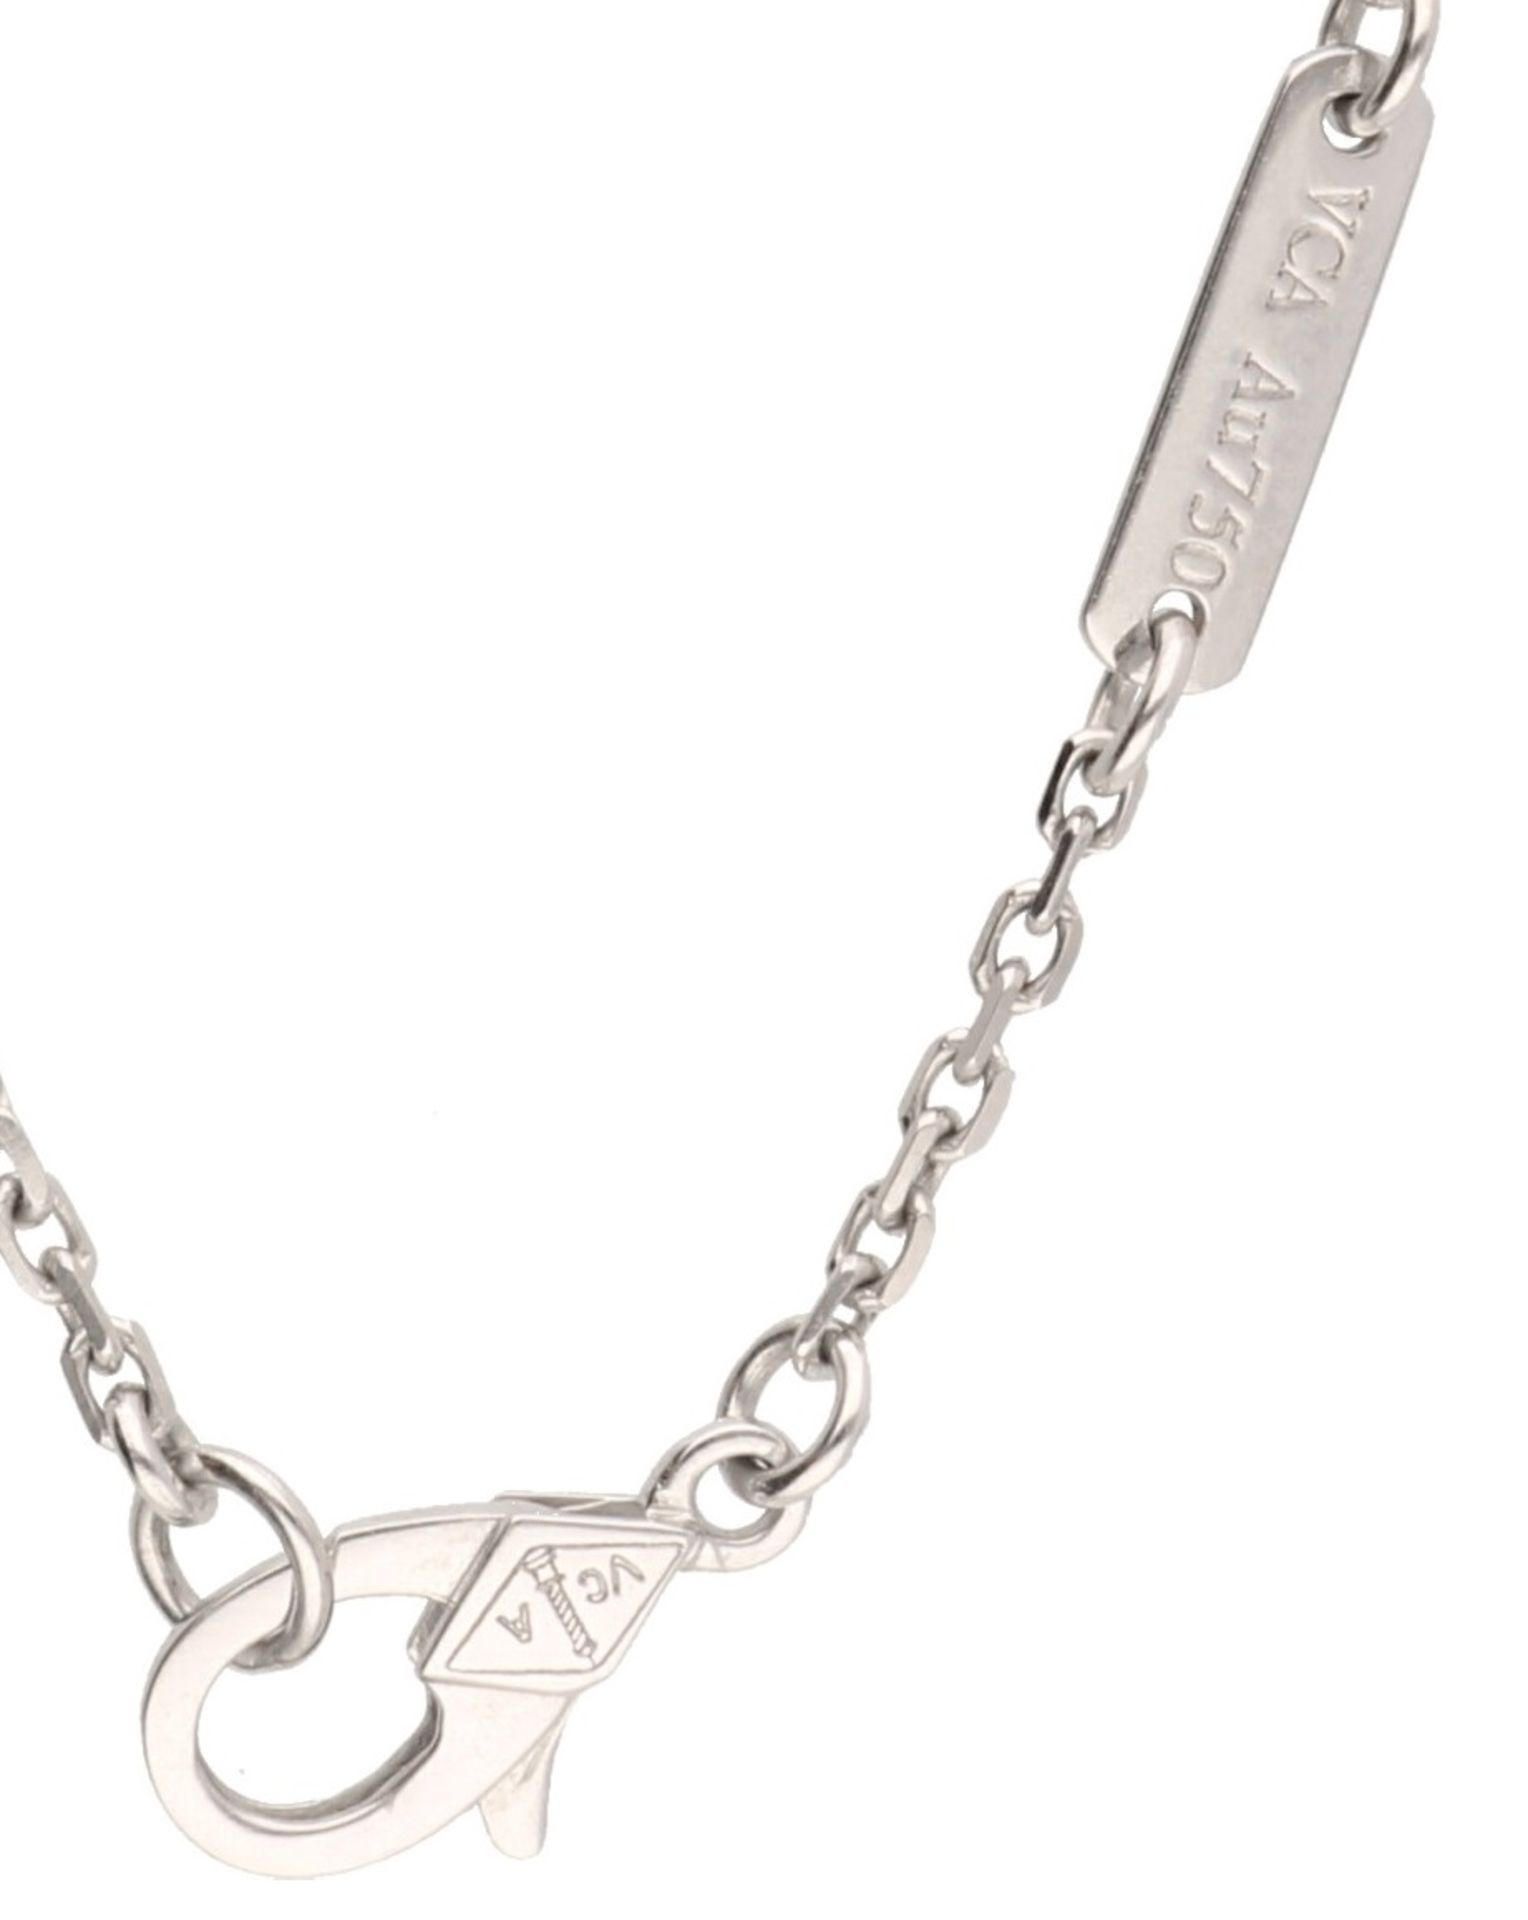 Van Cleef & Arpels necklace with Magic Alhambra pendant white gold, ca. 0.88 carat diamond - 18 ct. - Bild 7 aus 7